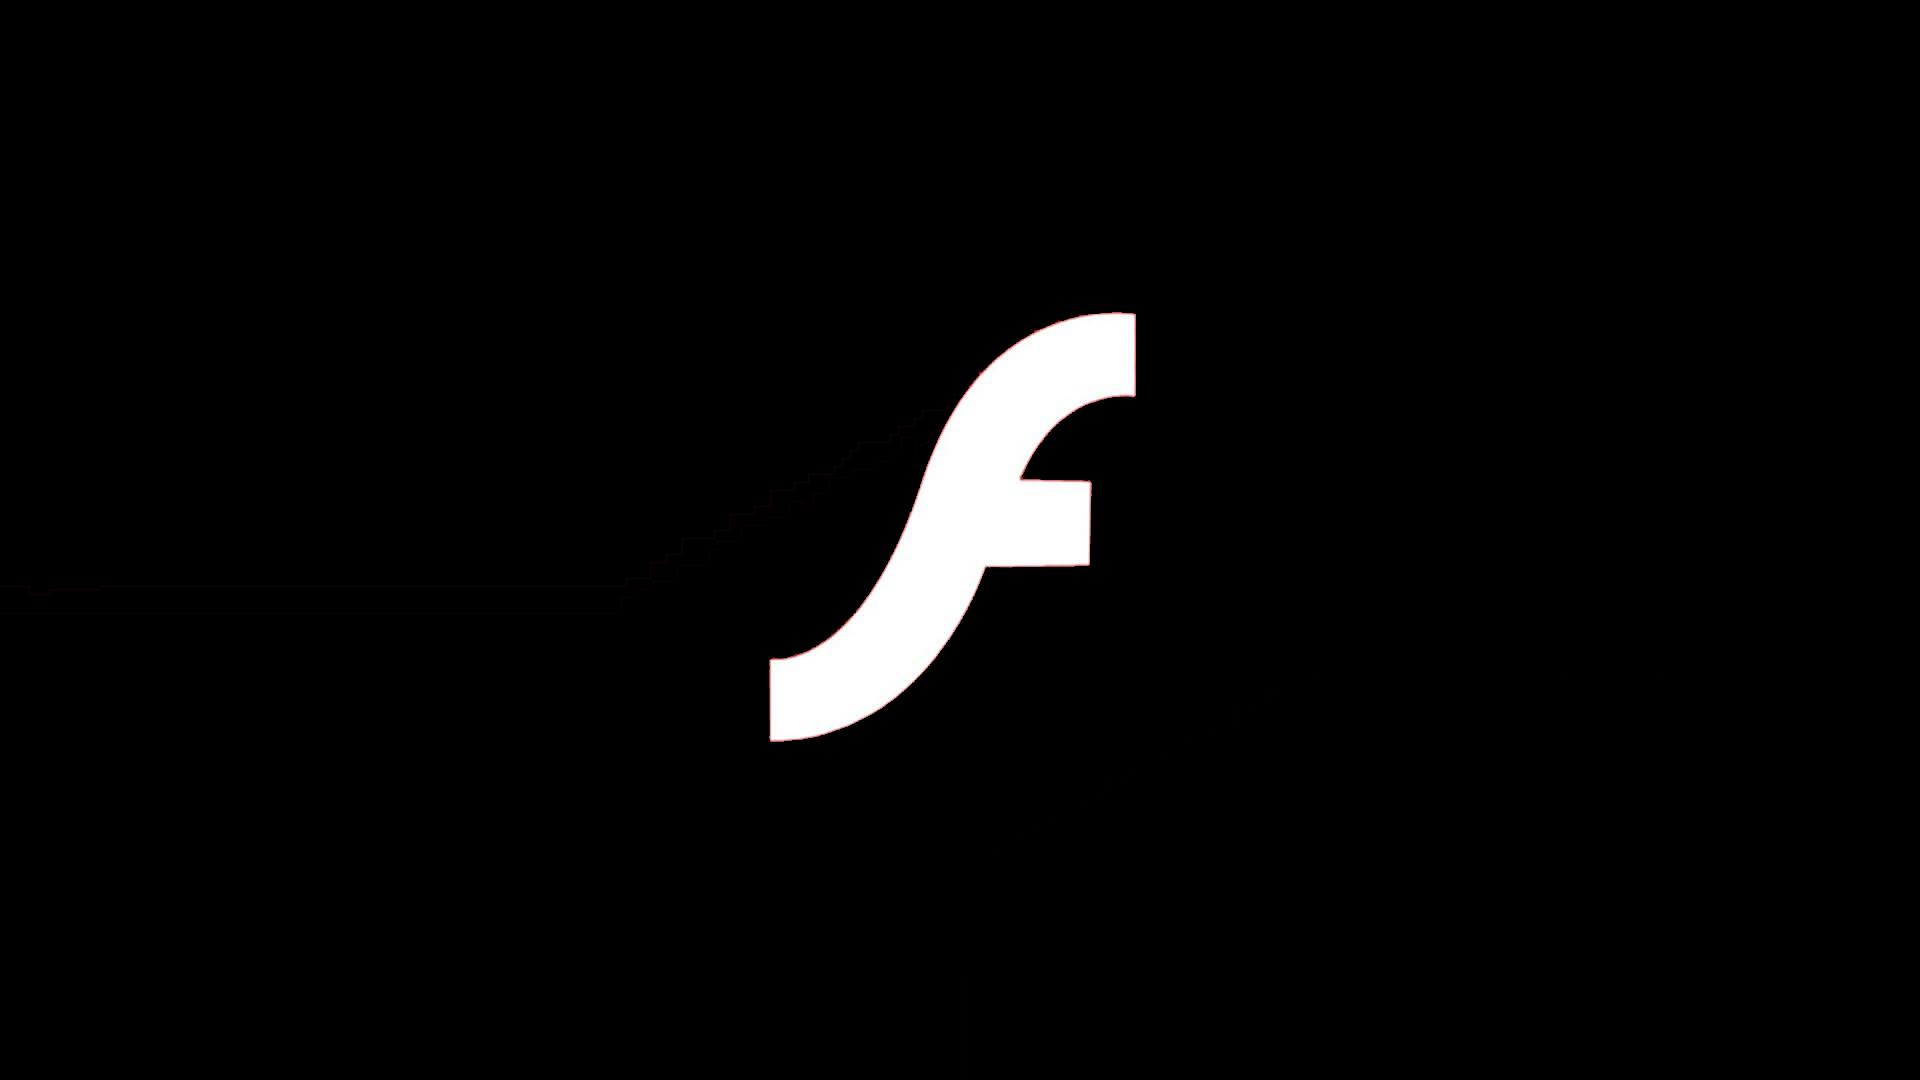 Показ Flash-контента будет заблокирован 12 января 2021 года